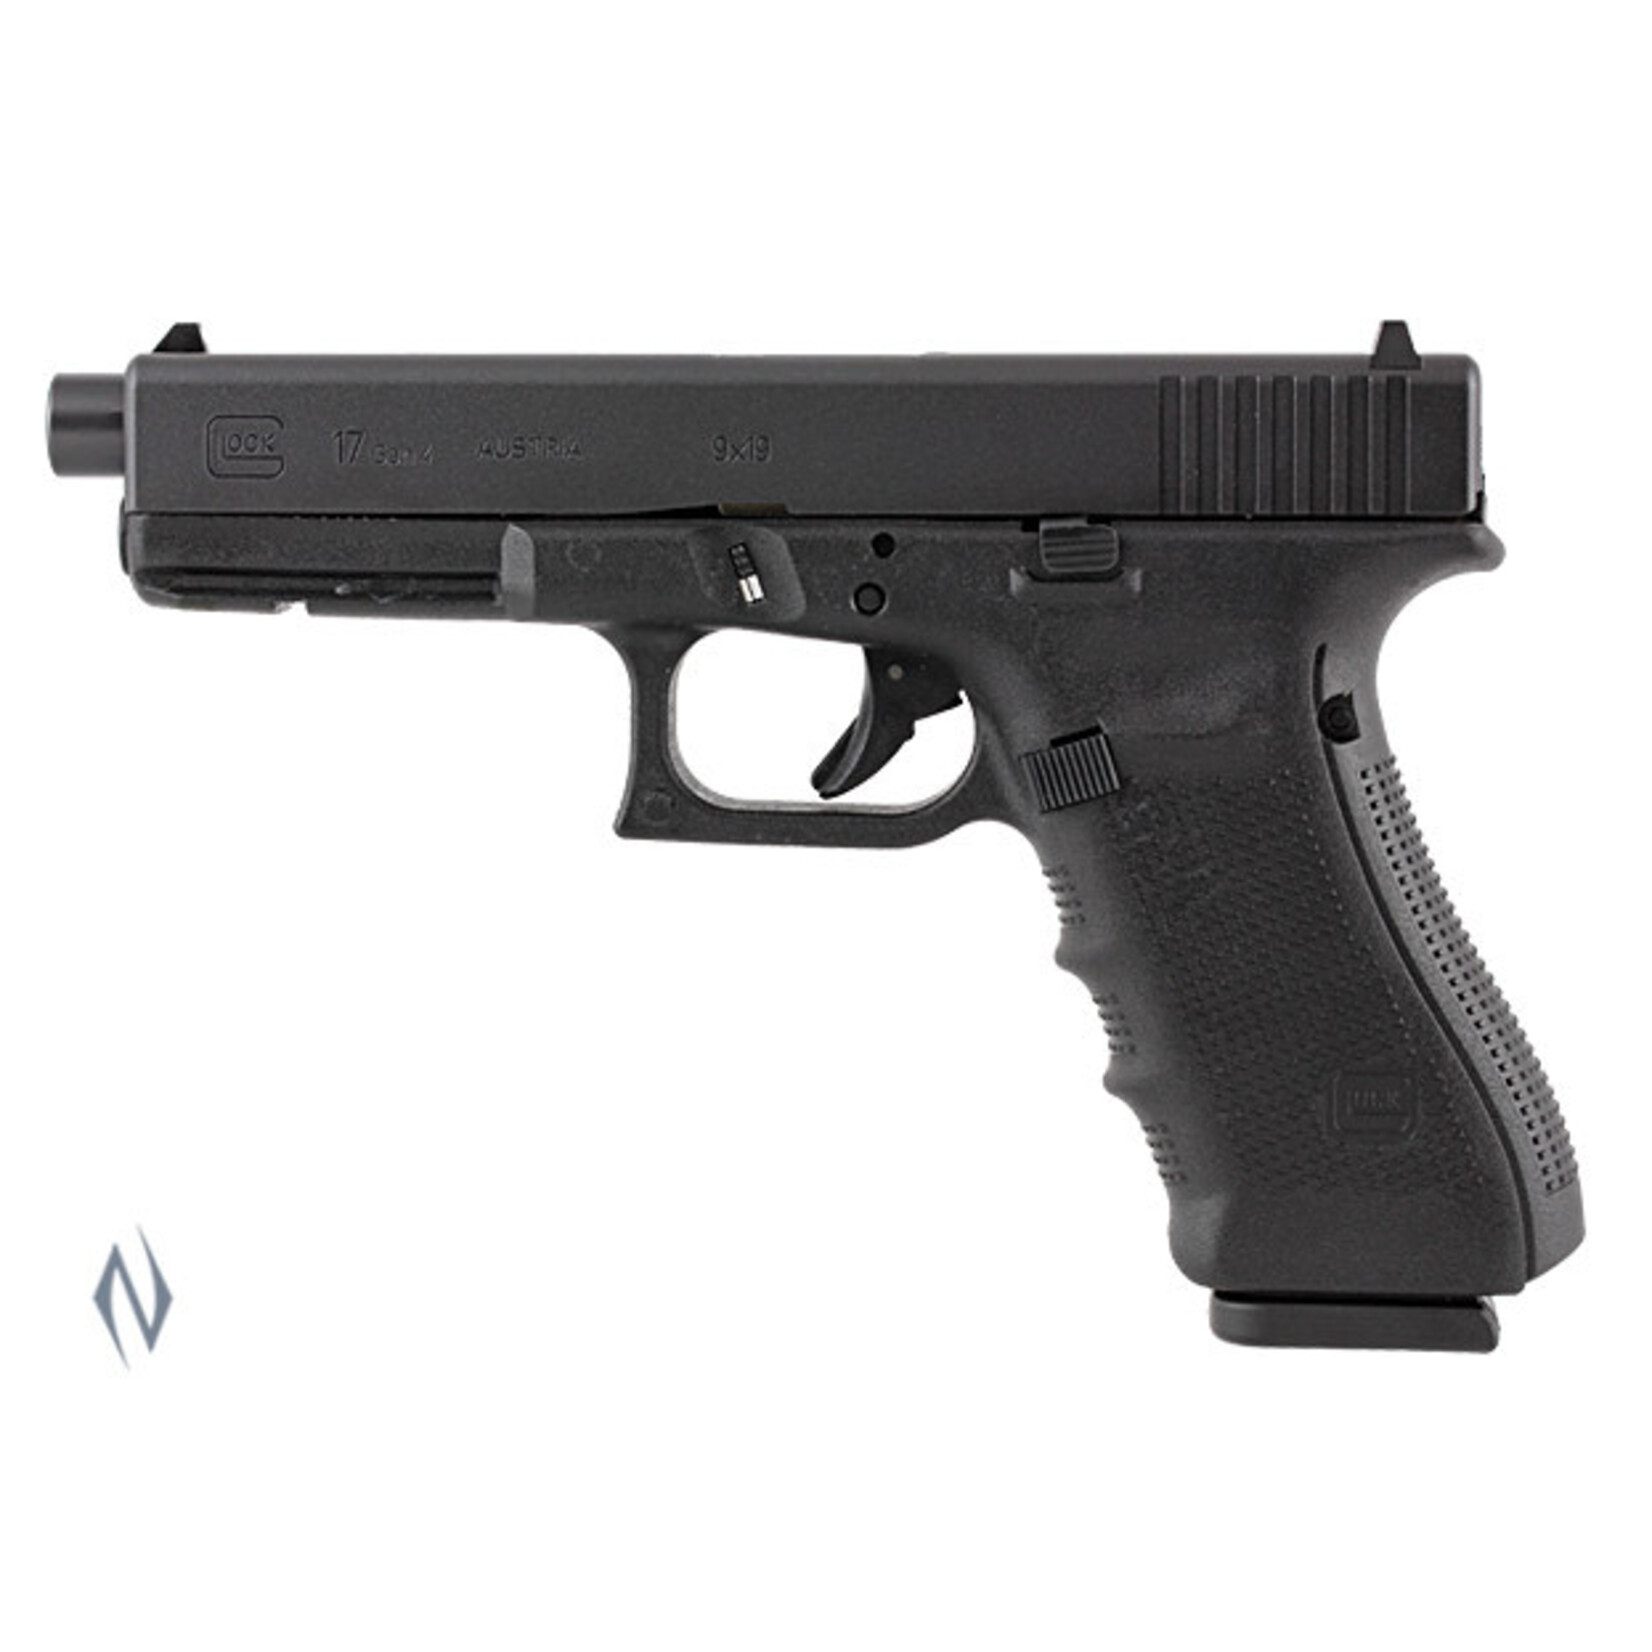 Glock Glock 17A Gen 4 9mm Self Loading Pistol in Hard Case